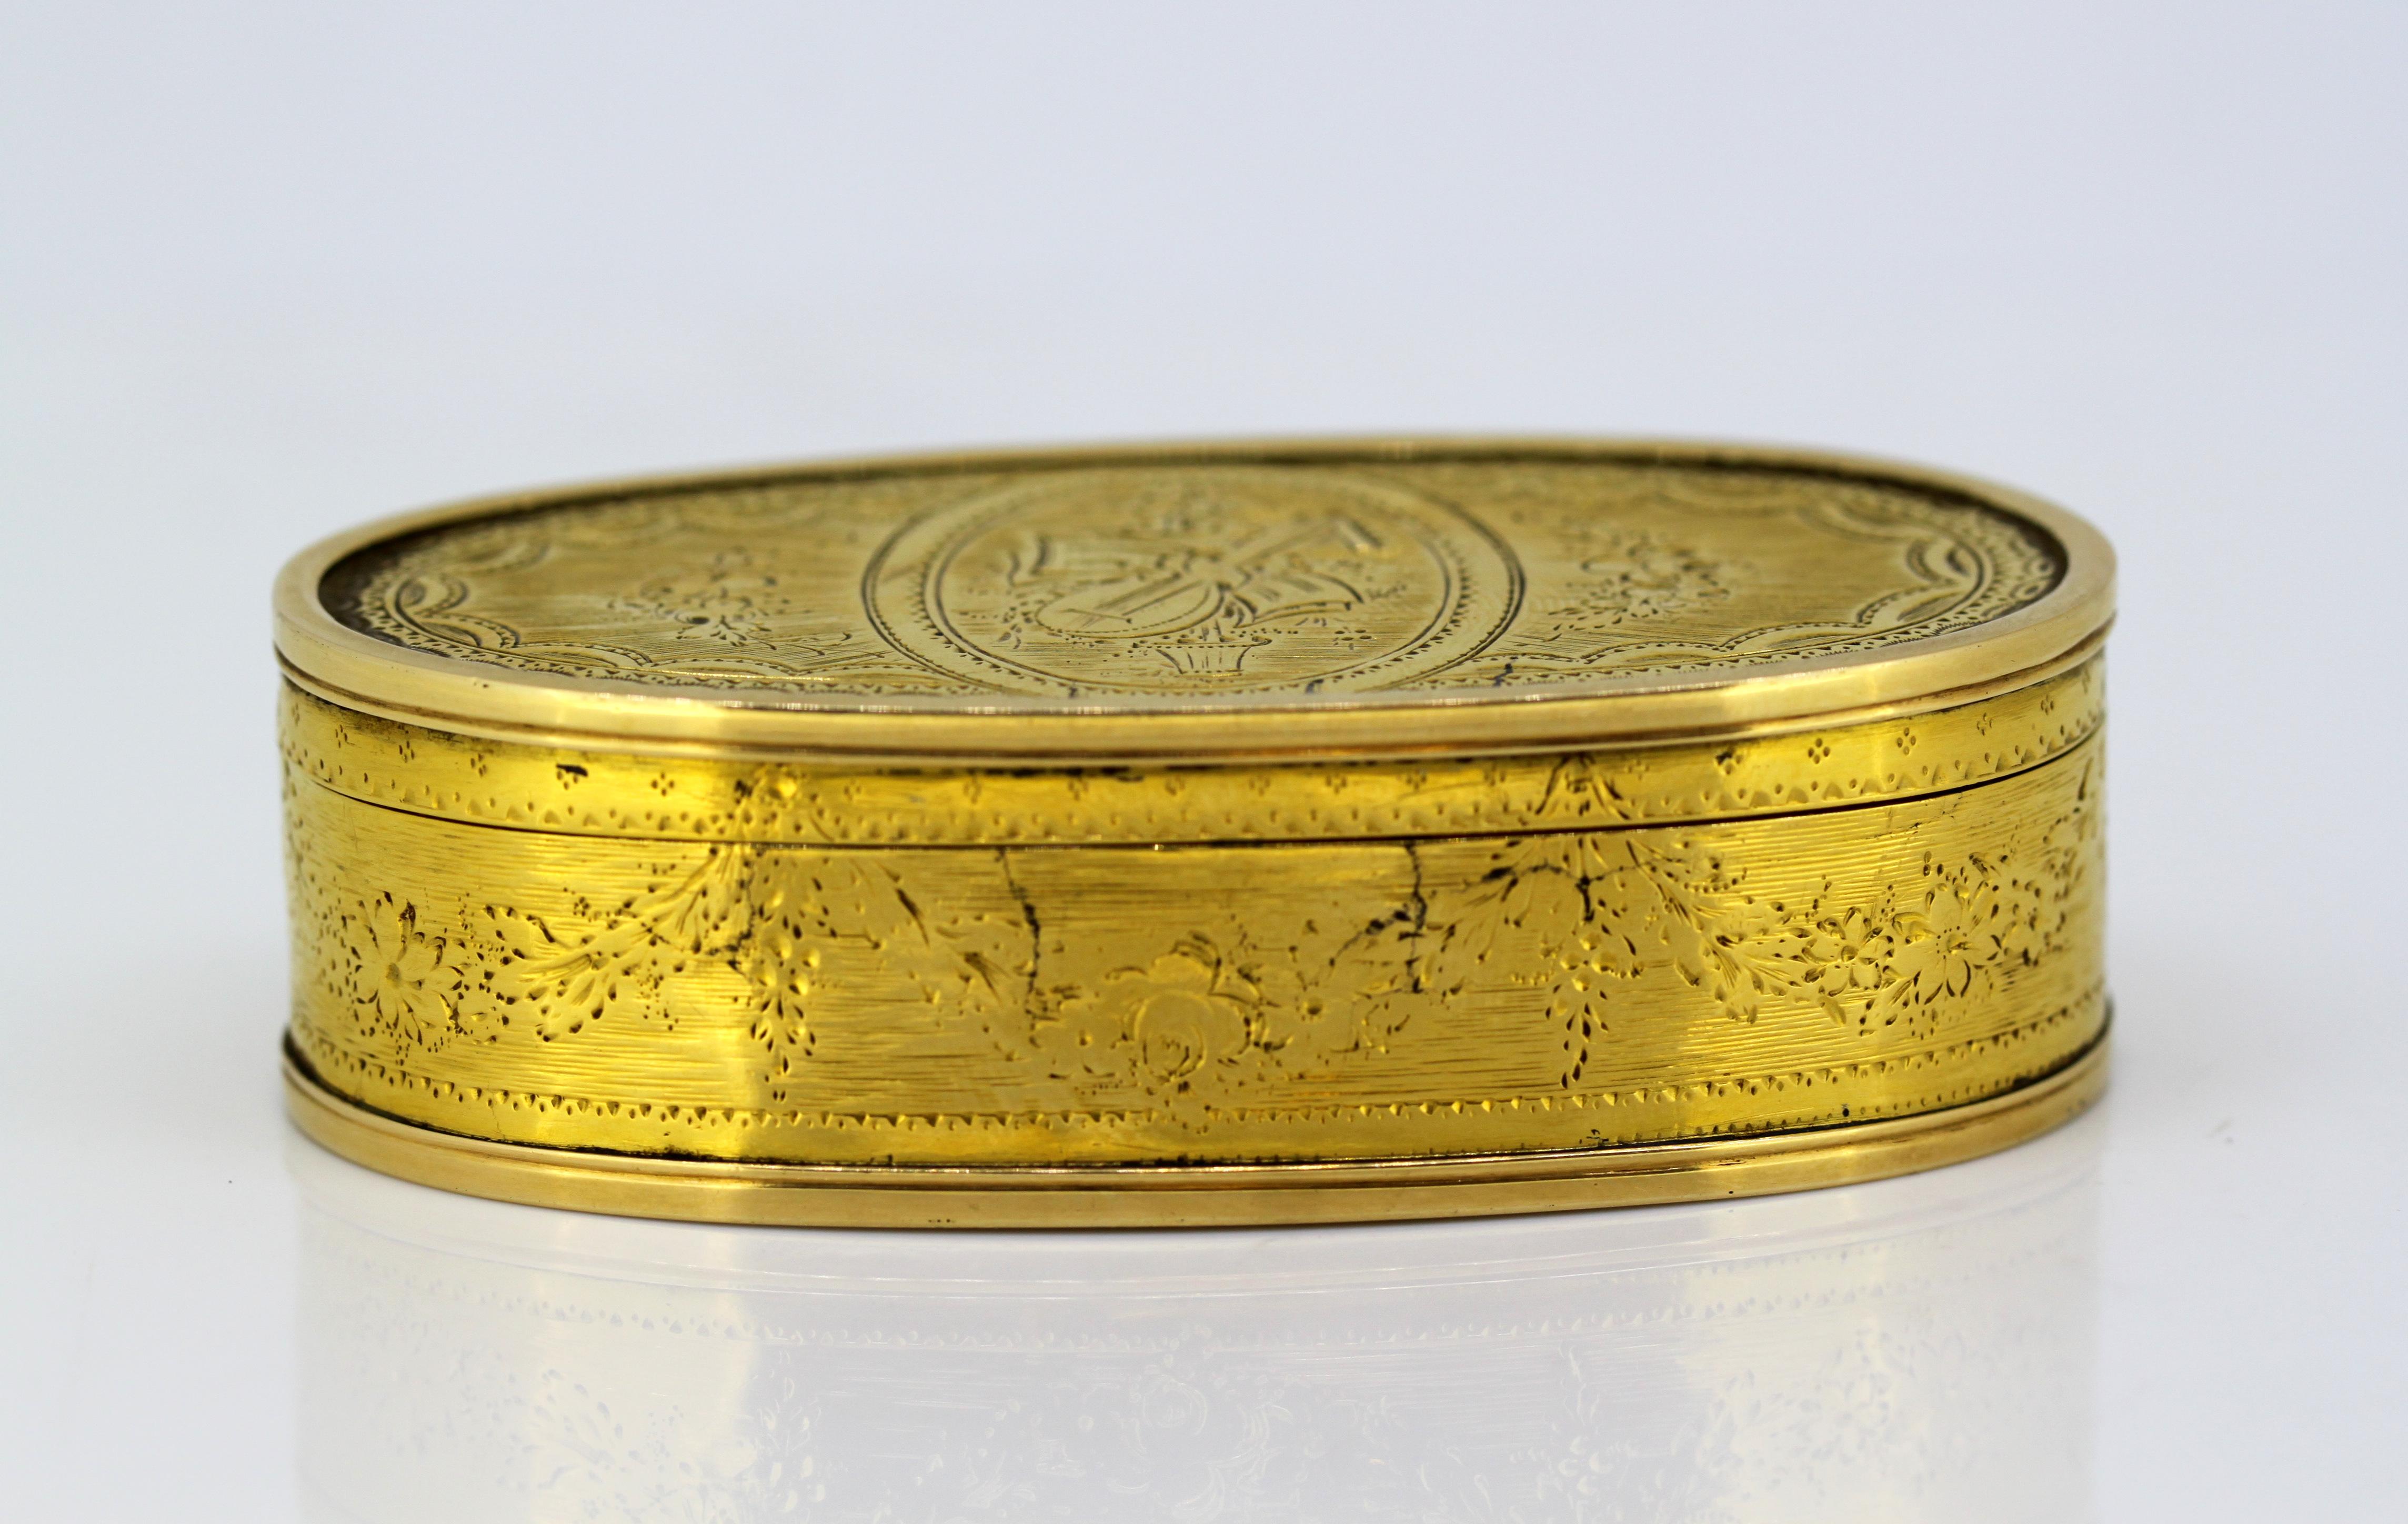 Antike georgische Schnupftabakdose aus 18 Karat Gelbgold
Hergestellt in London, 1776.
Herstellerzeichen: ILI (Nicht identifiziert)
Vollständig gepunzt.

Abmessungen:
Größe: 7,7 x 4 x 2,3 cm
Gewicht: 70 Gramm

Zustand: Box hat einige